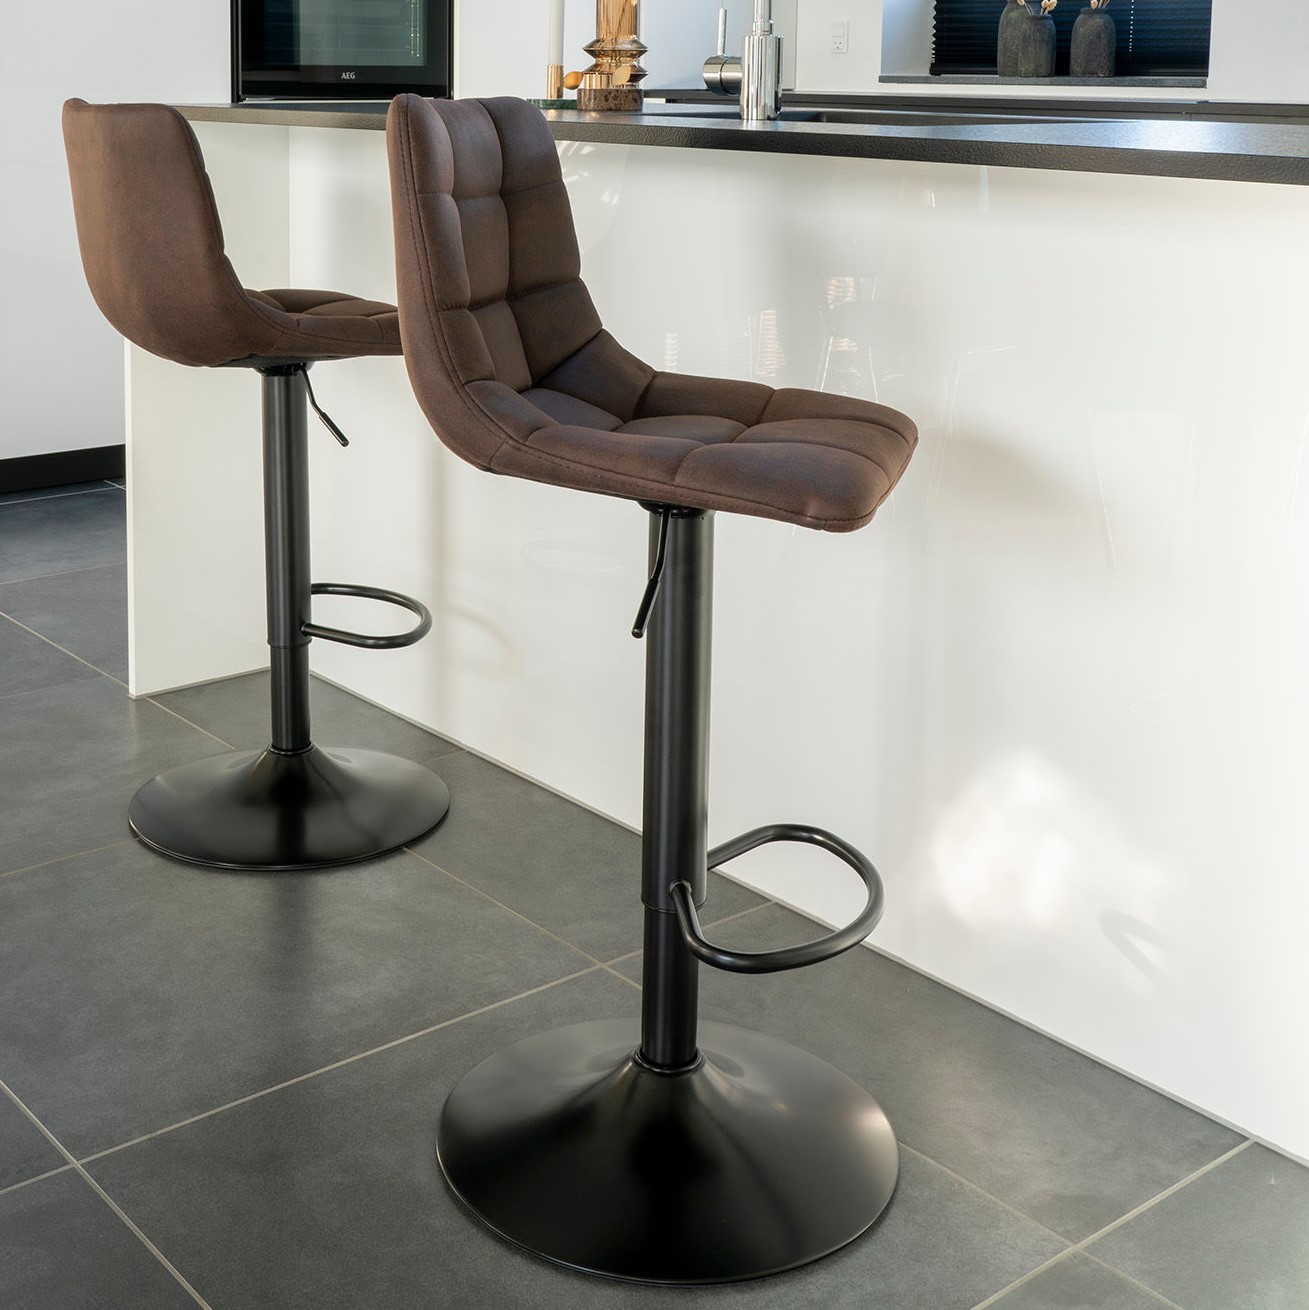 Icey – 2 barstole i sort metal med mørkebrun stof sæde